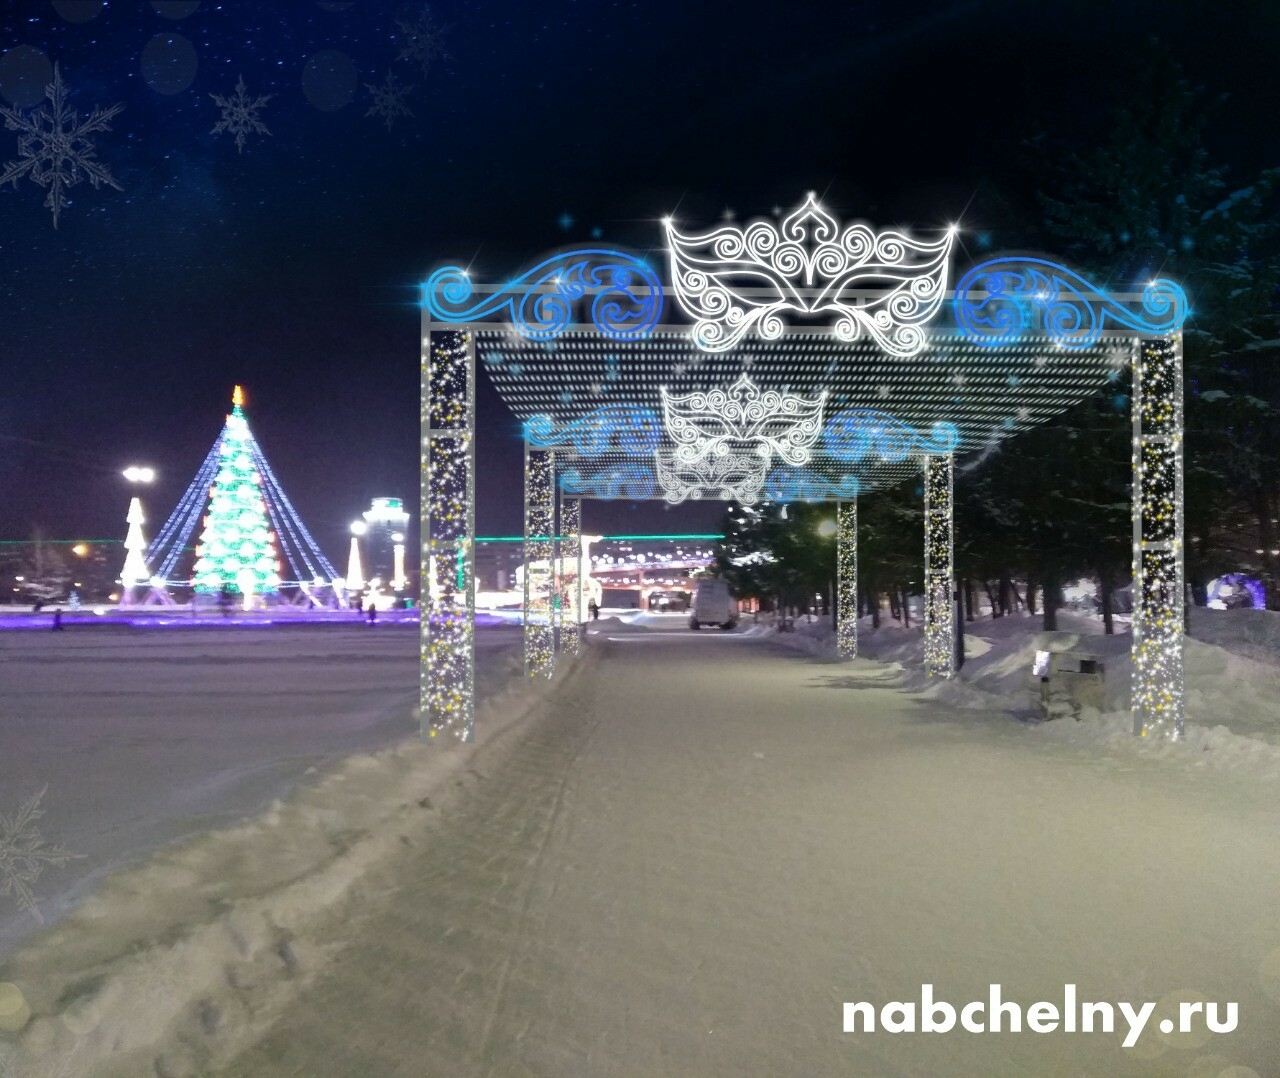 Площадь Азатлык в Челнах к Новому году украсят в сказочном стиле